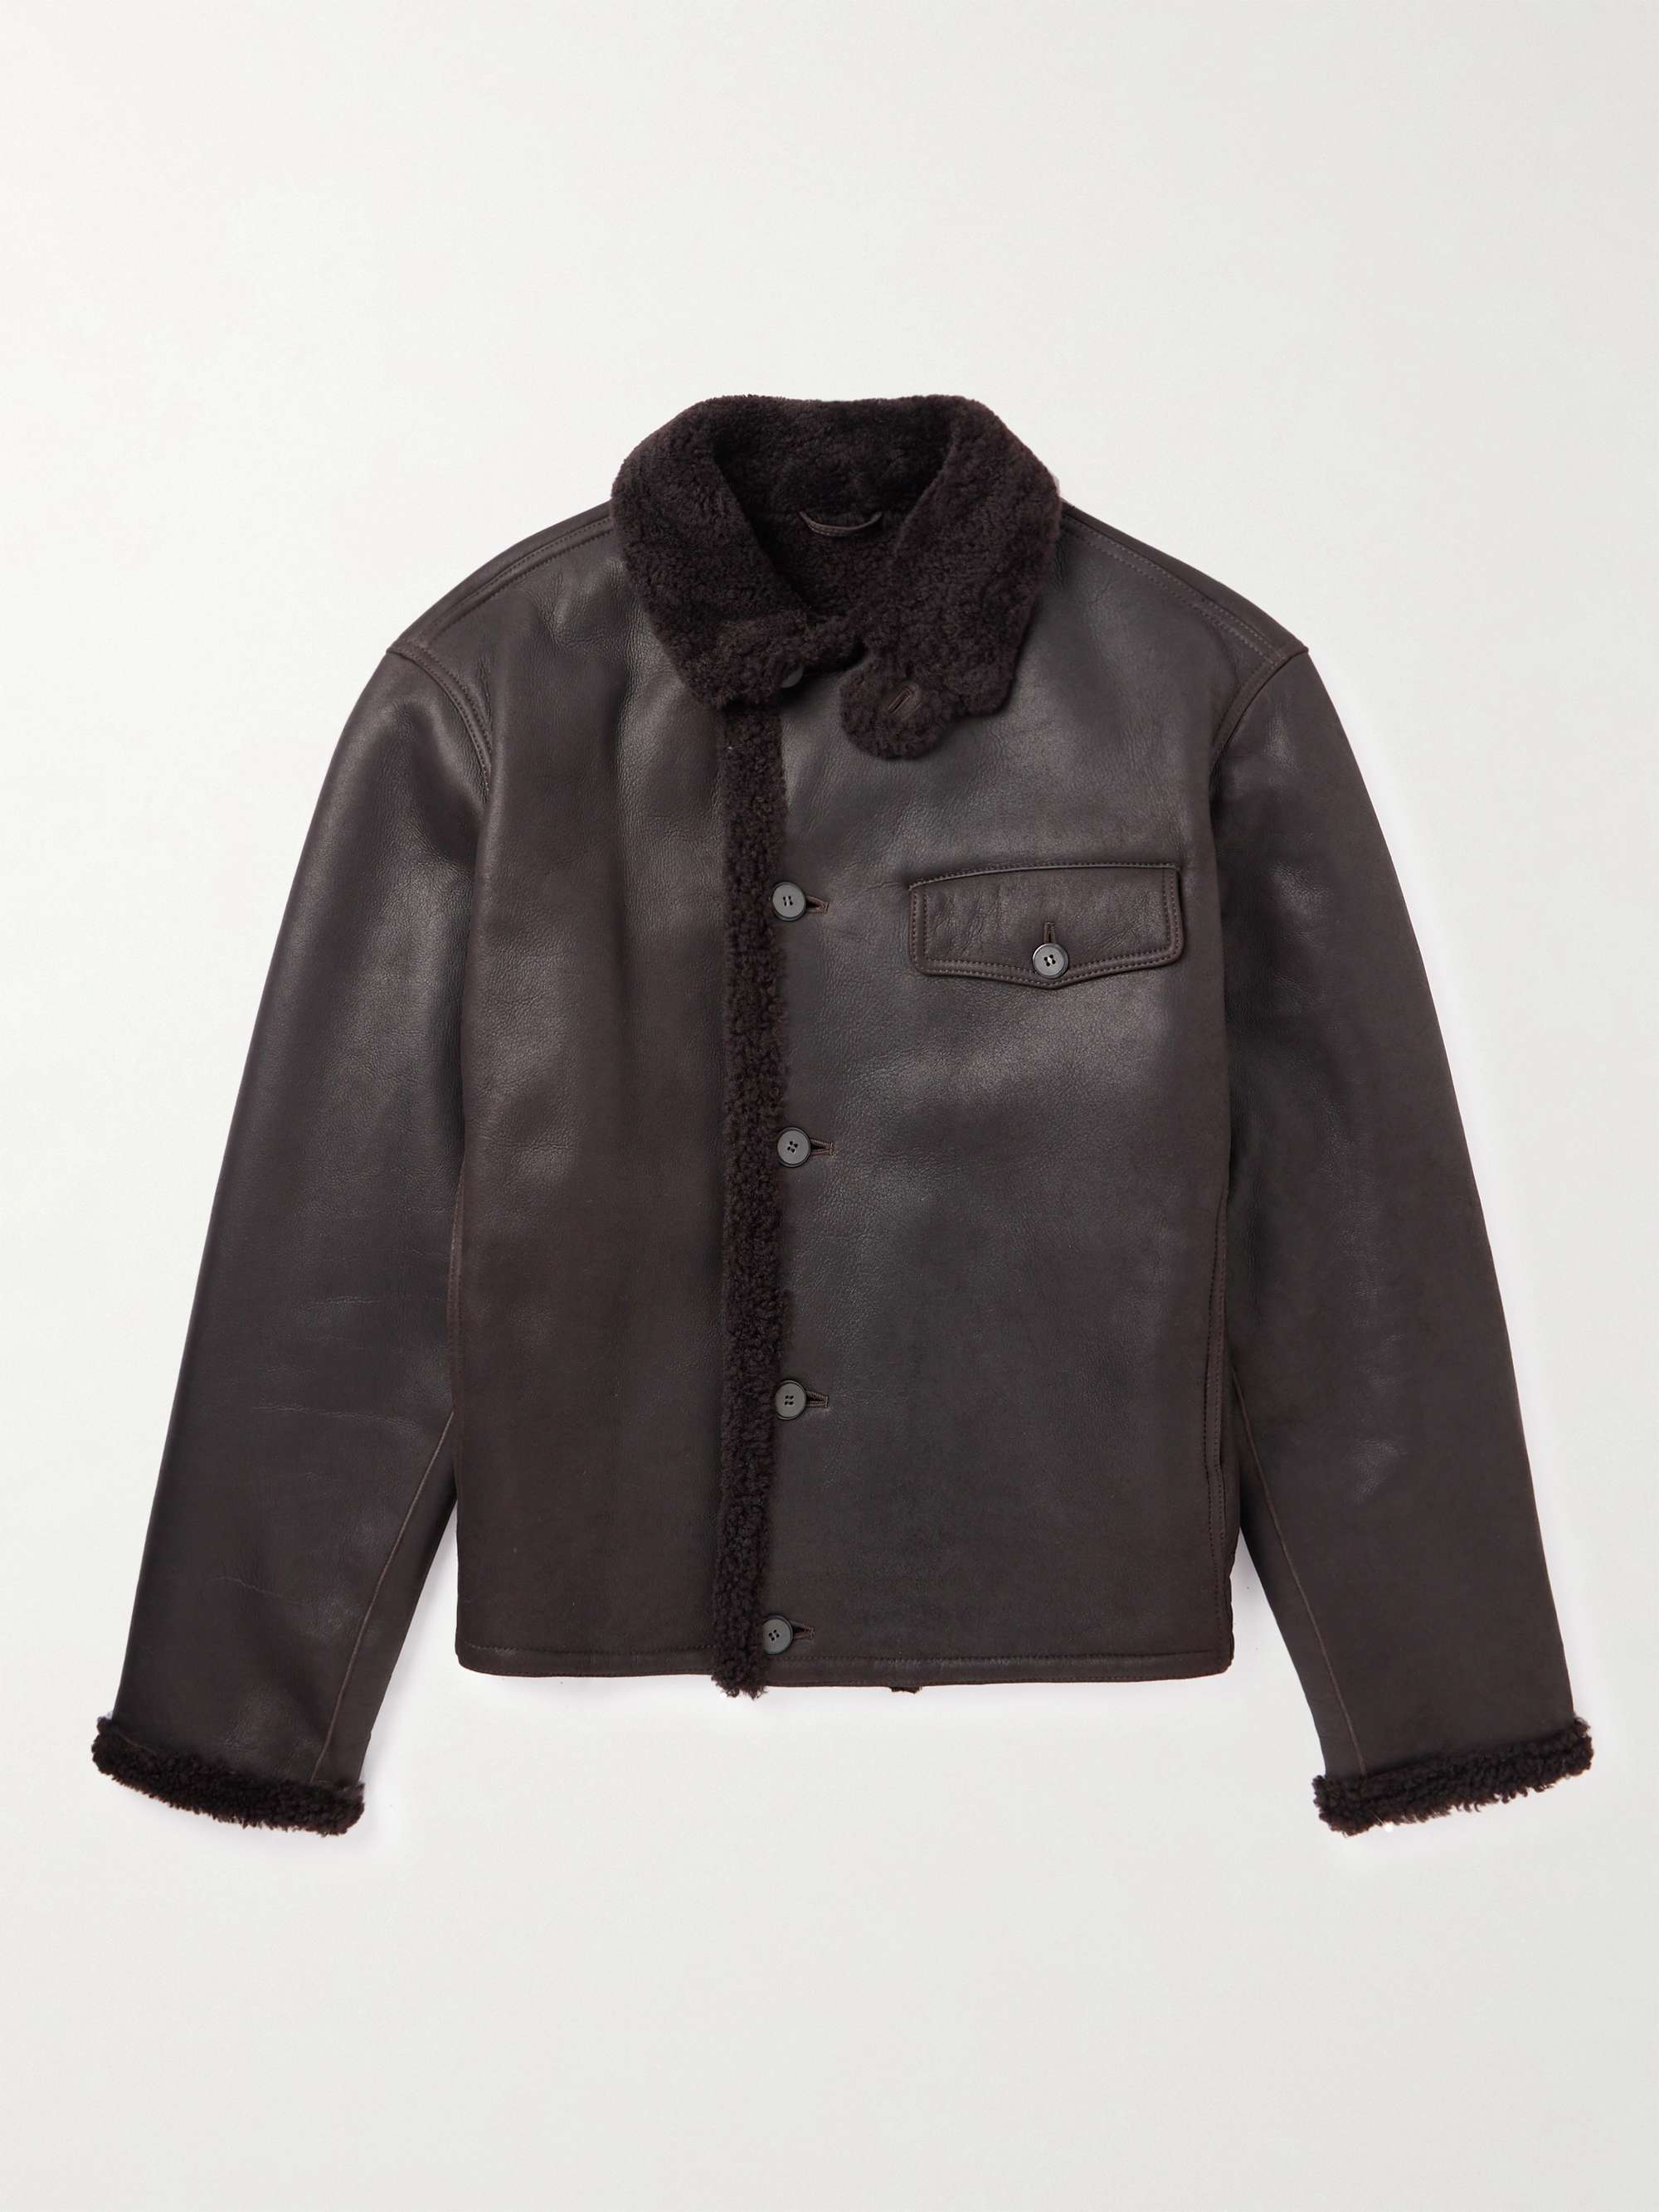 GIORGIO ARMANI Shearling Jacket for Men | MR PORTER